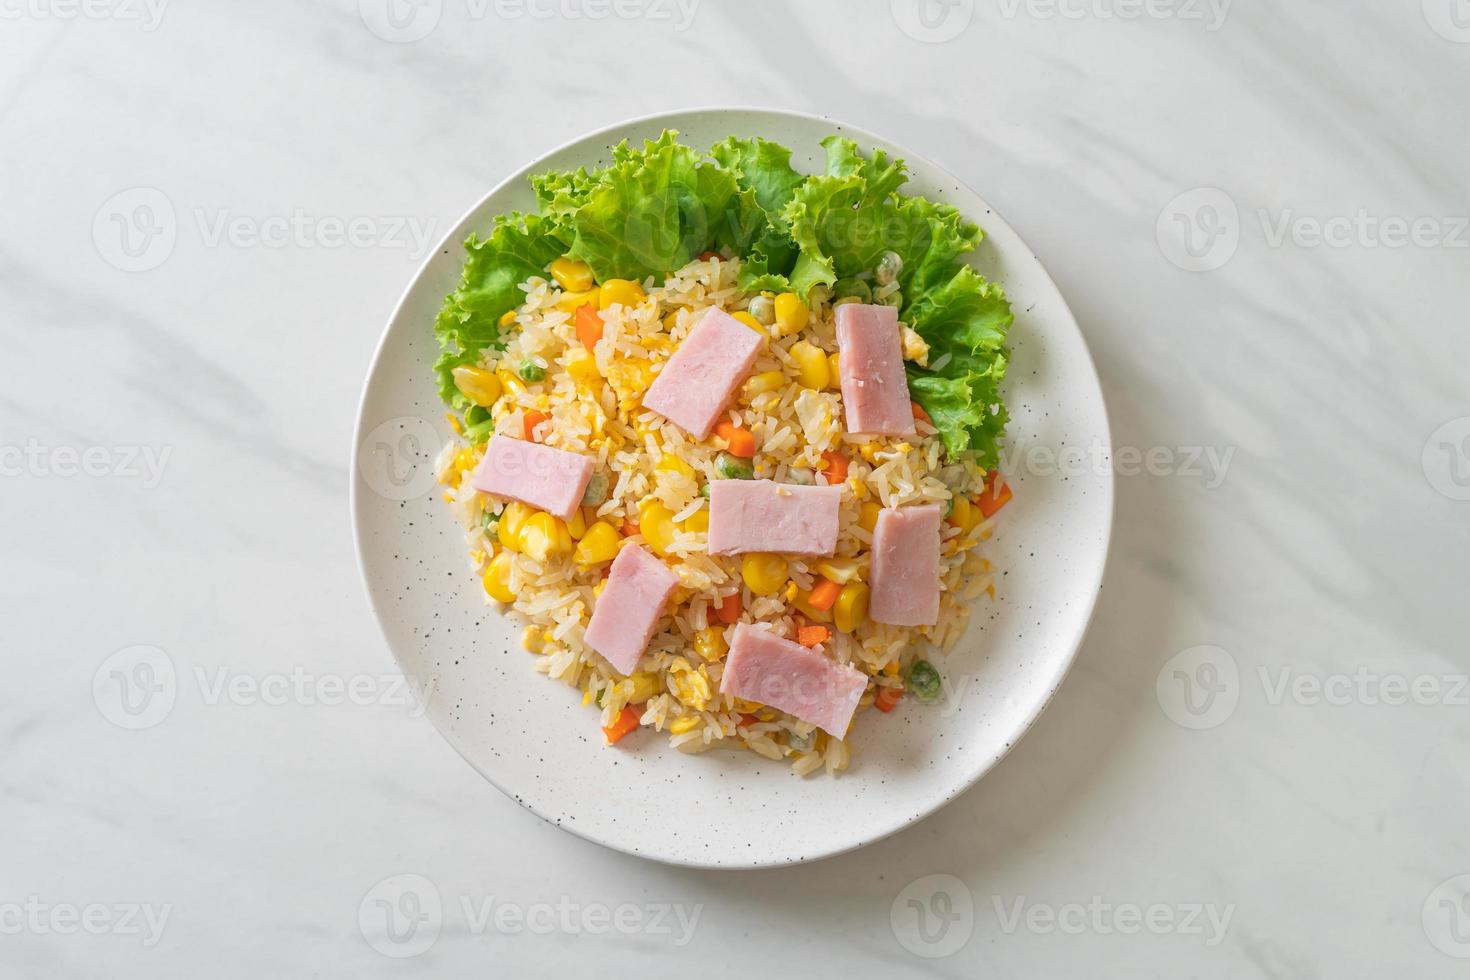 arroz frito caseiro com presunto e legumes mistos de cenoura e feijão verde foto